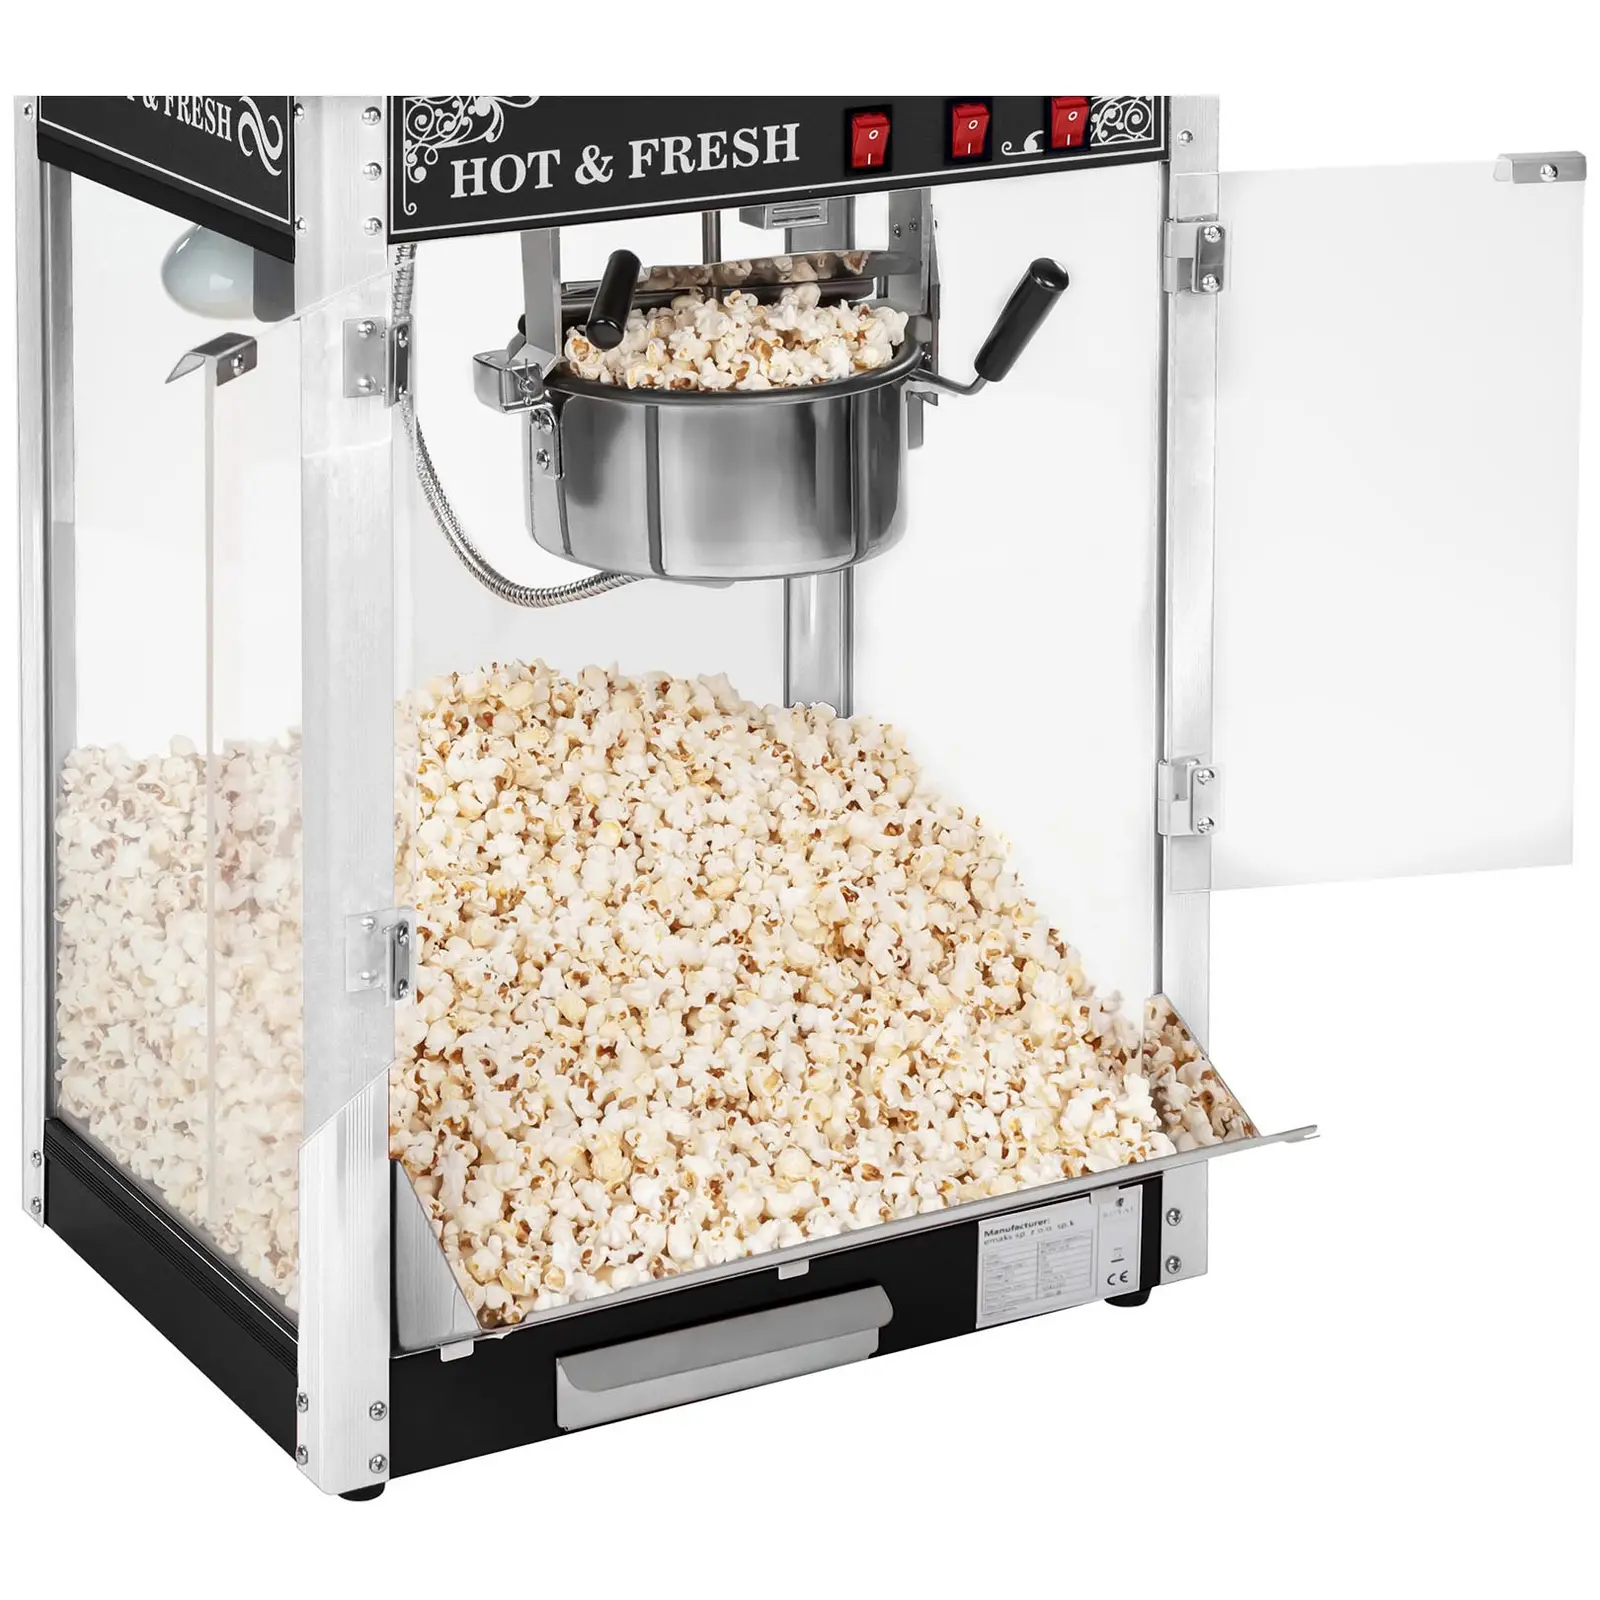 Macchina per popcorn nera - Design americano